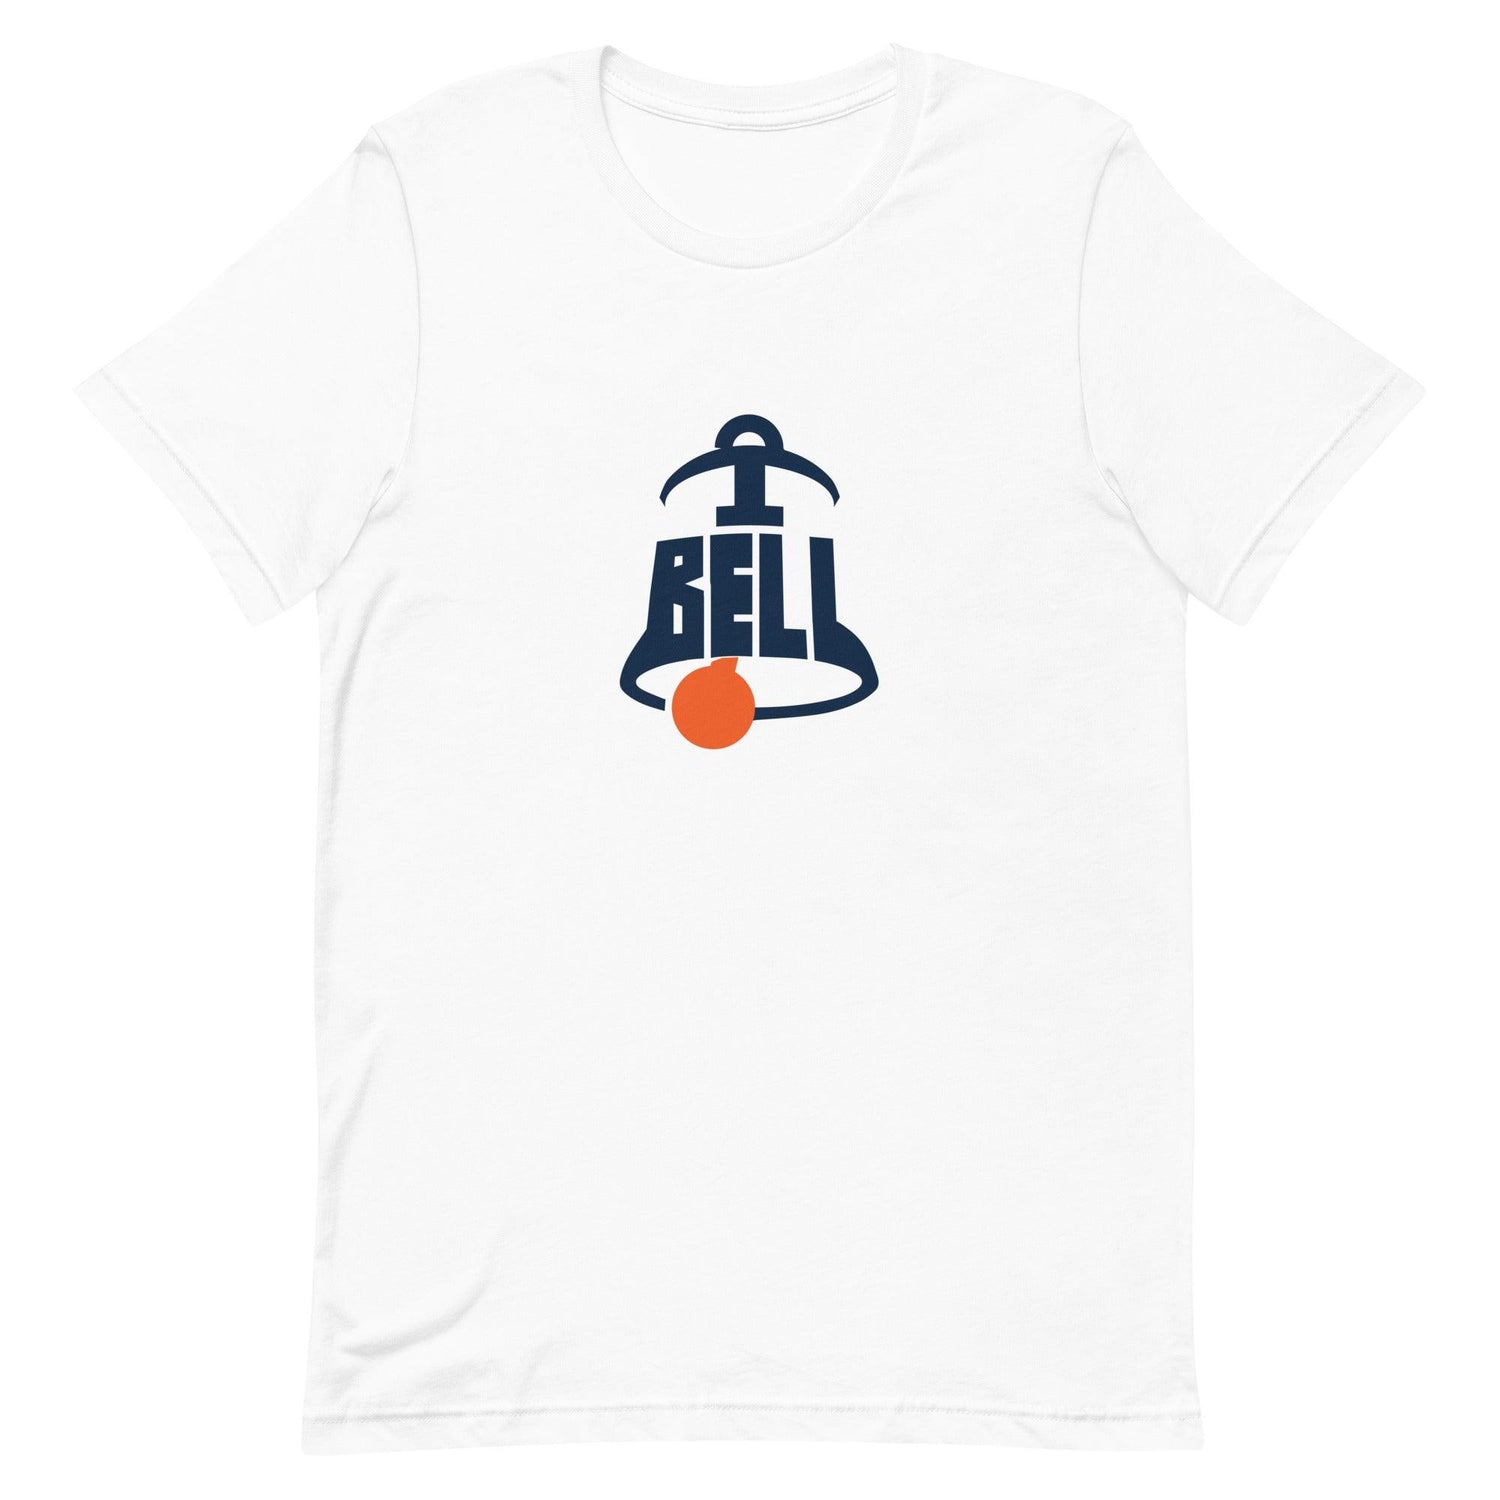 Trumane Bell II "Gametime" t-shirt - Fan Arch